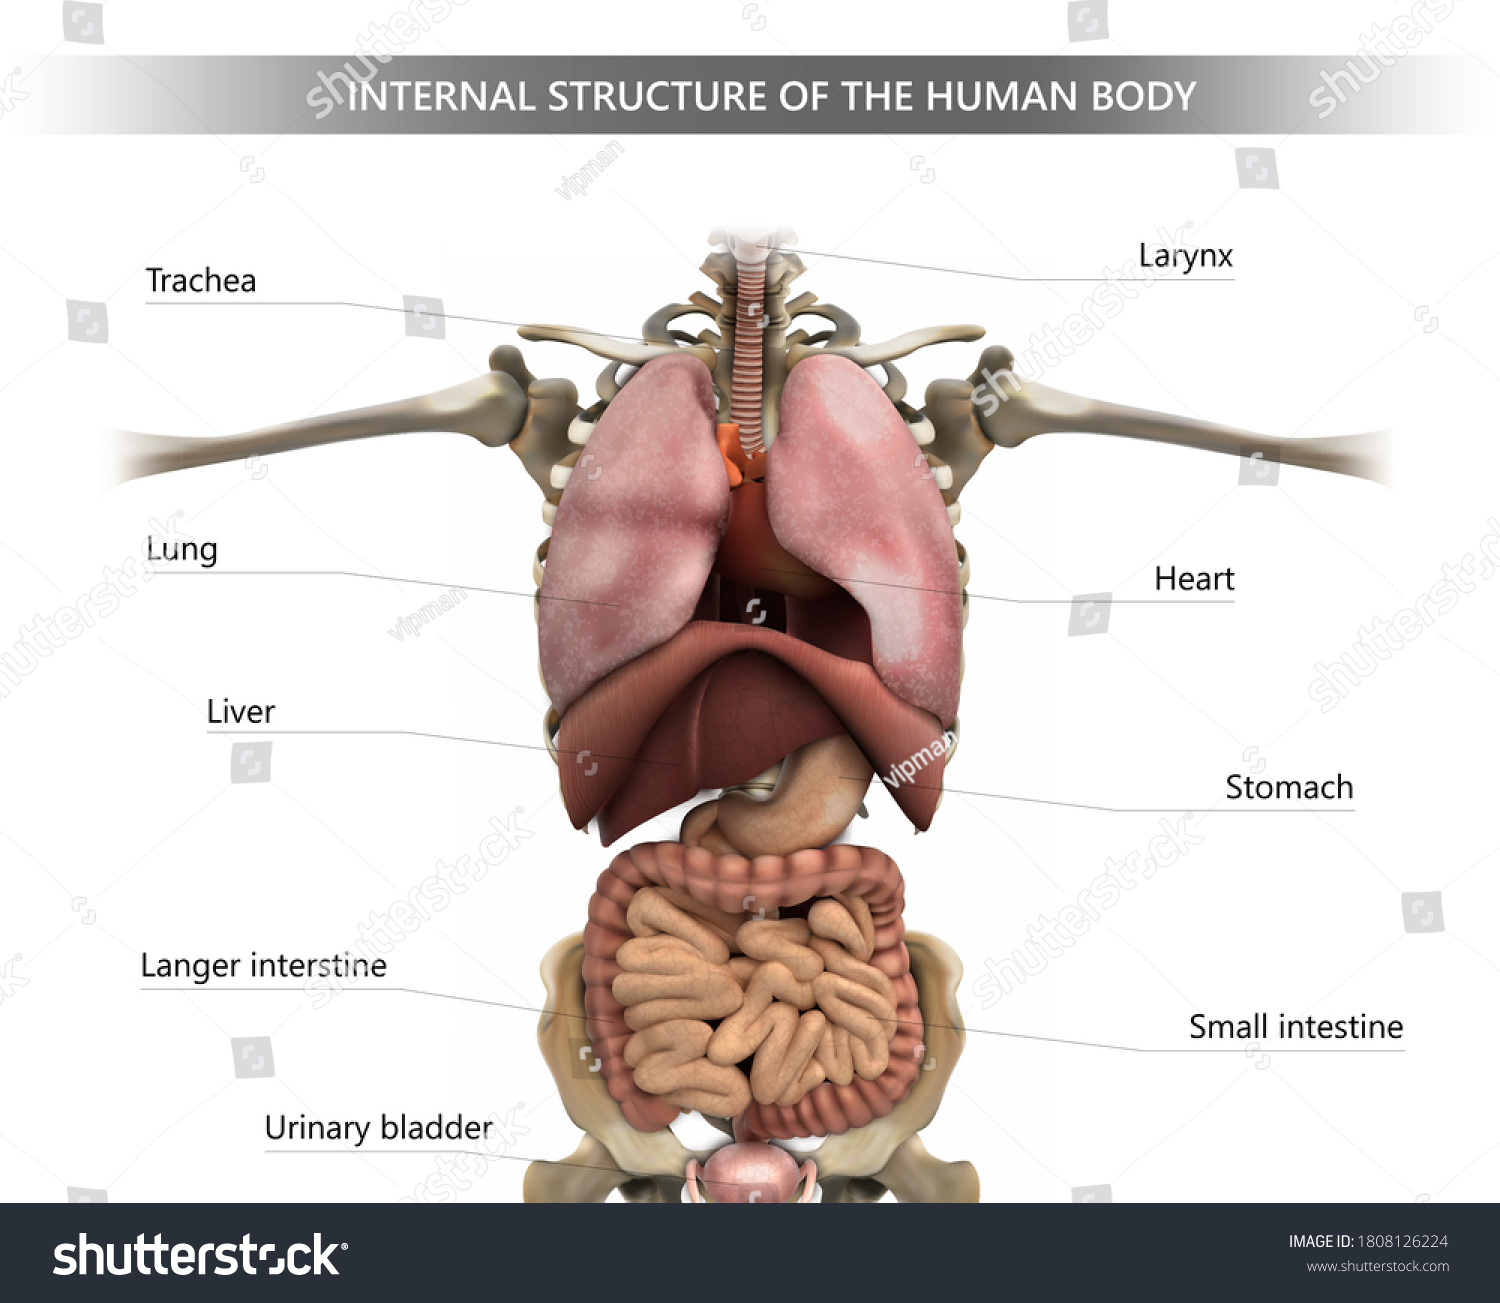 Human structure. Строение человека внутренние органы. Человек в разрезе внутренние органы. Анатомия органов обезьяны. Строение внутренних органов обезьяны.